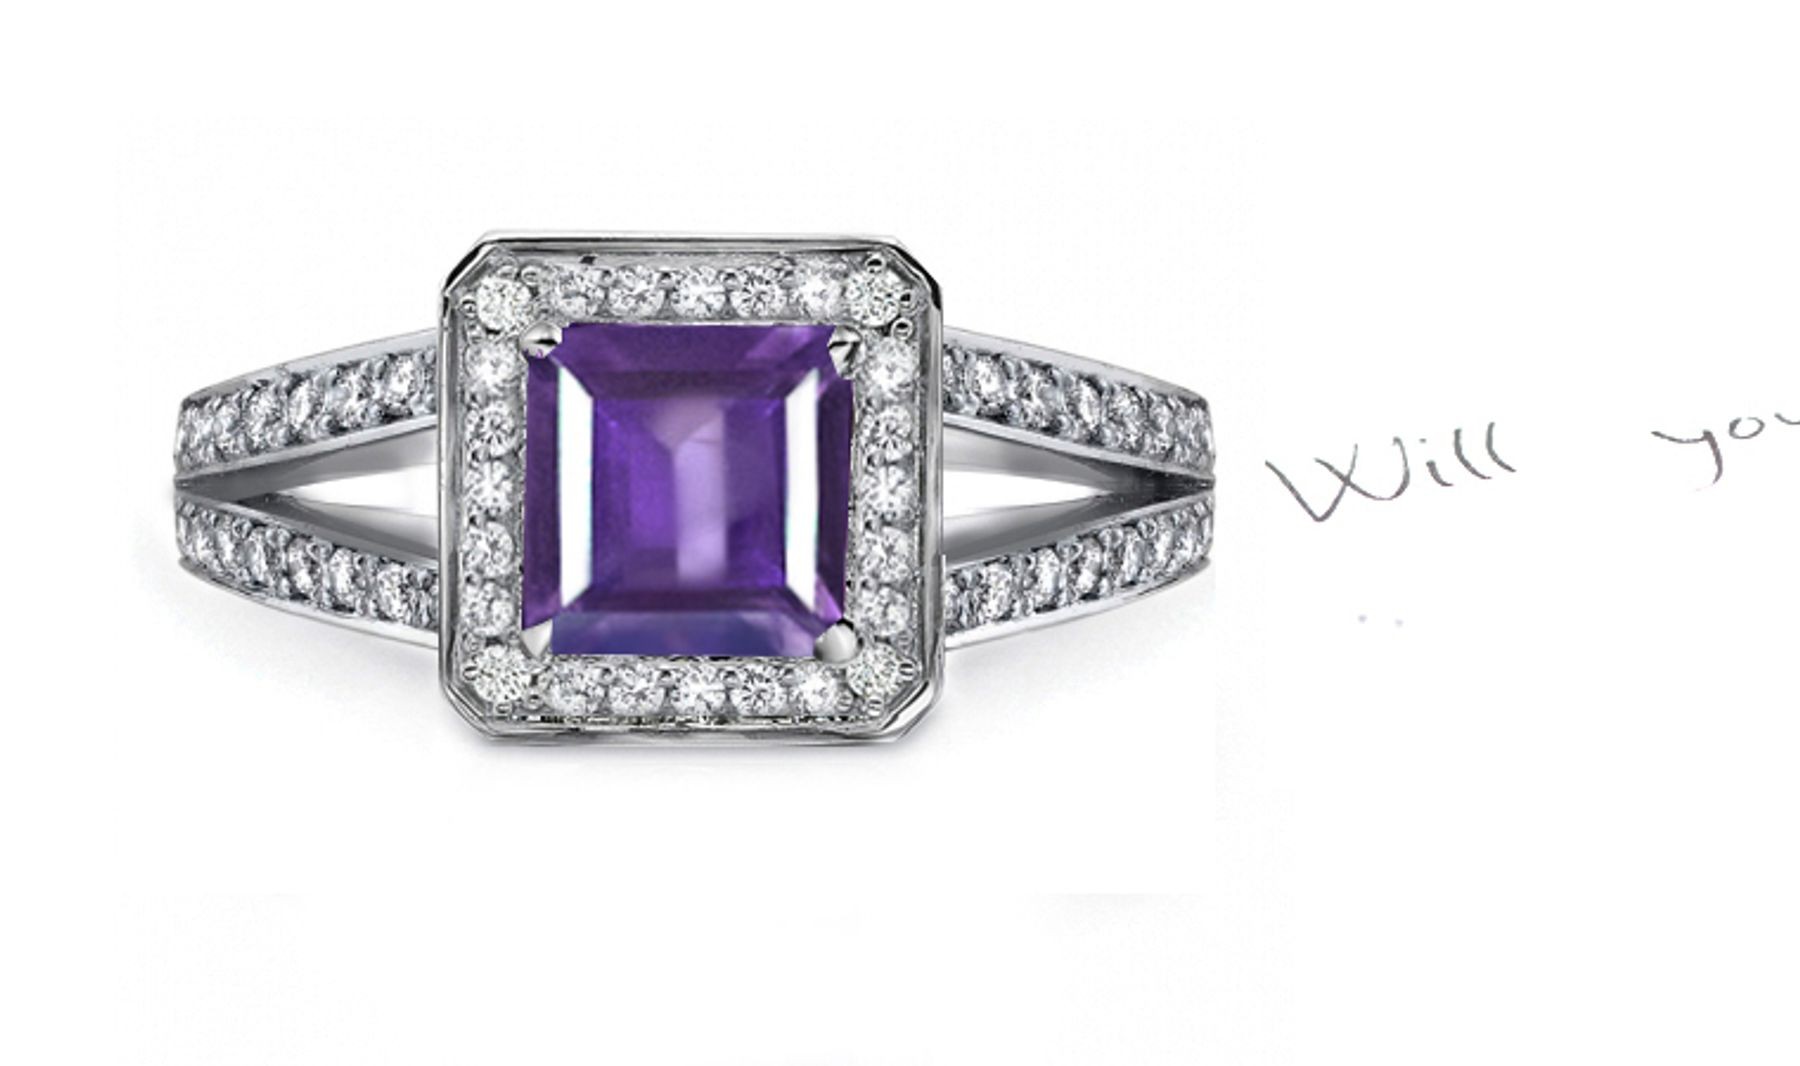 Timeless: A Stylish Purple Sapphire & Diamond Ring